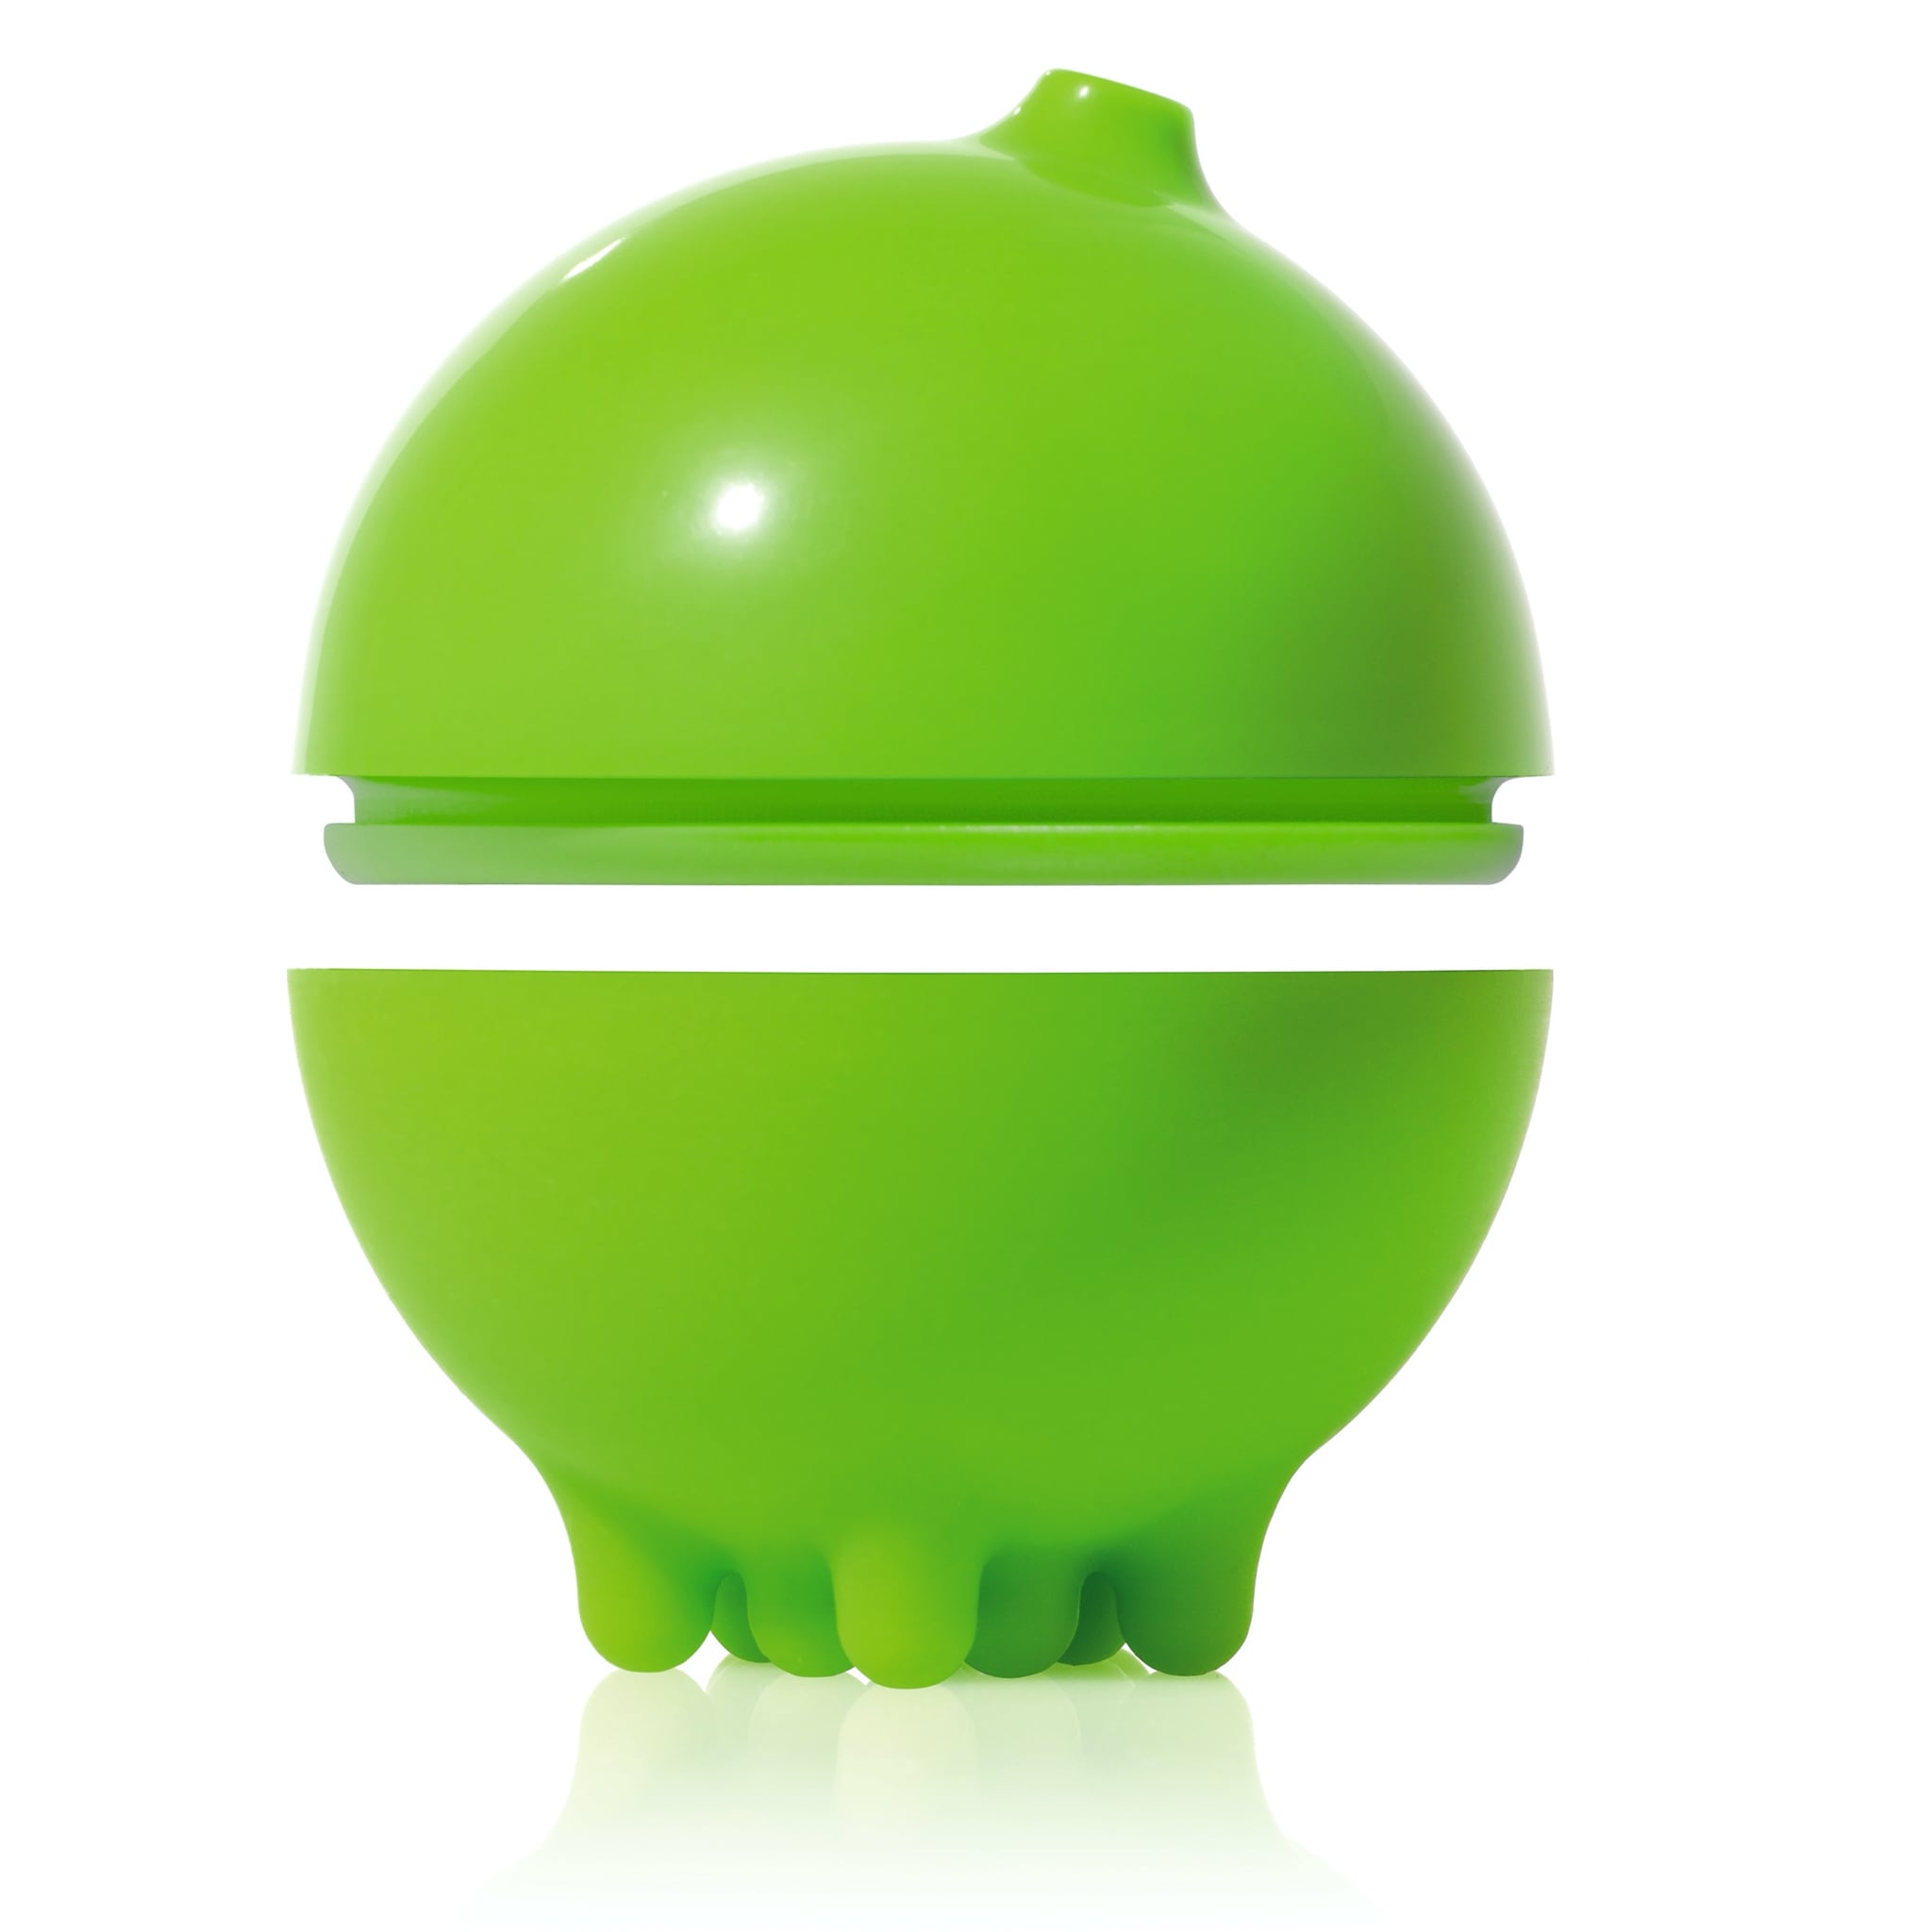 bezpieczna zabawka do wody #kolor_zielony